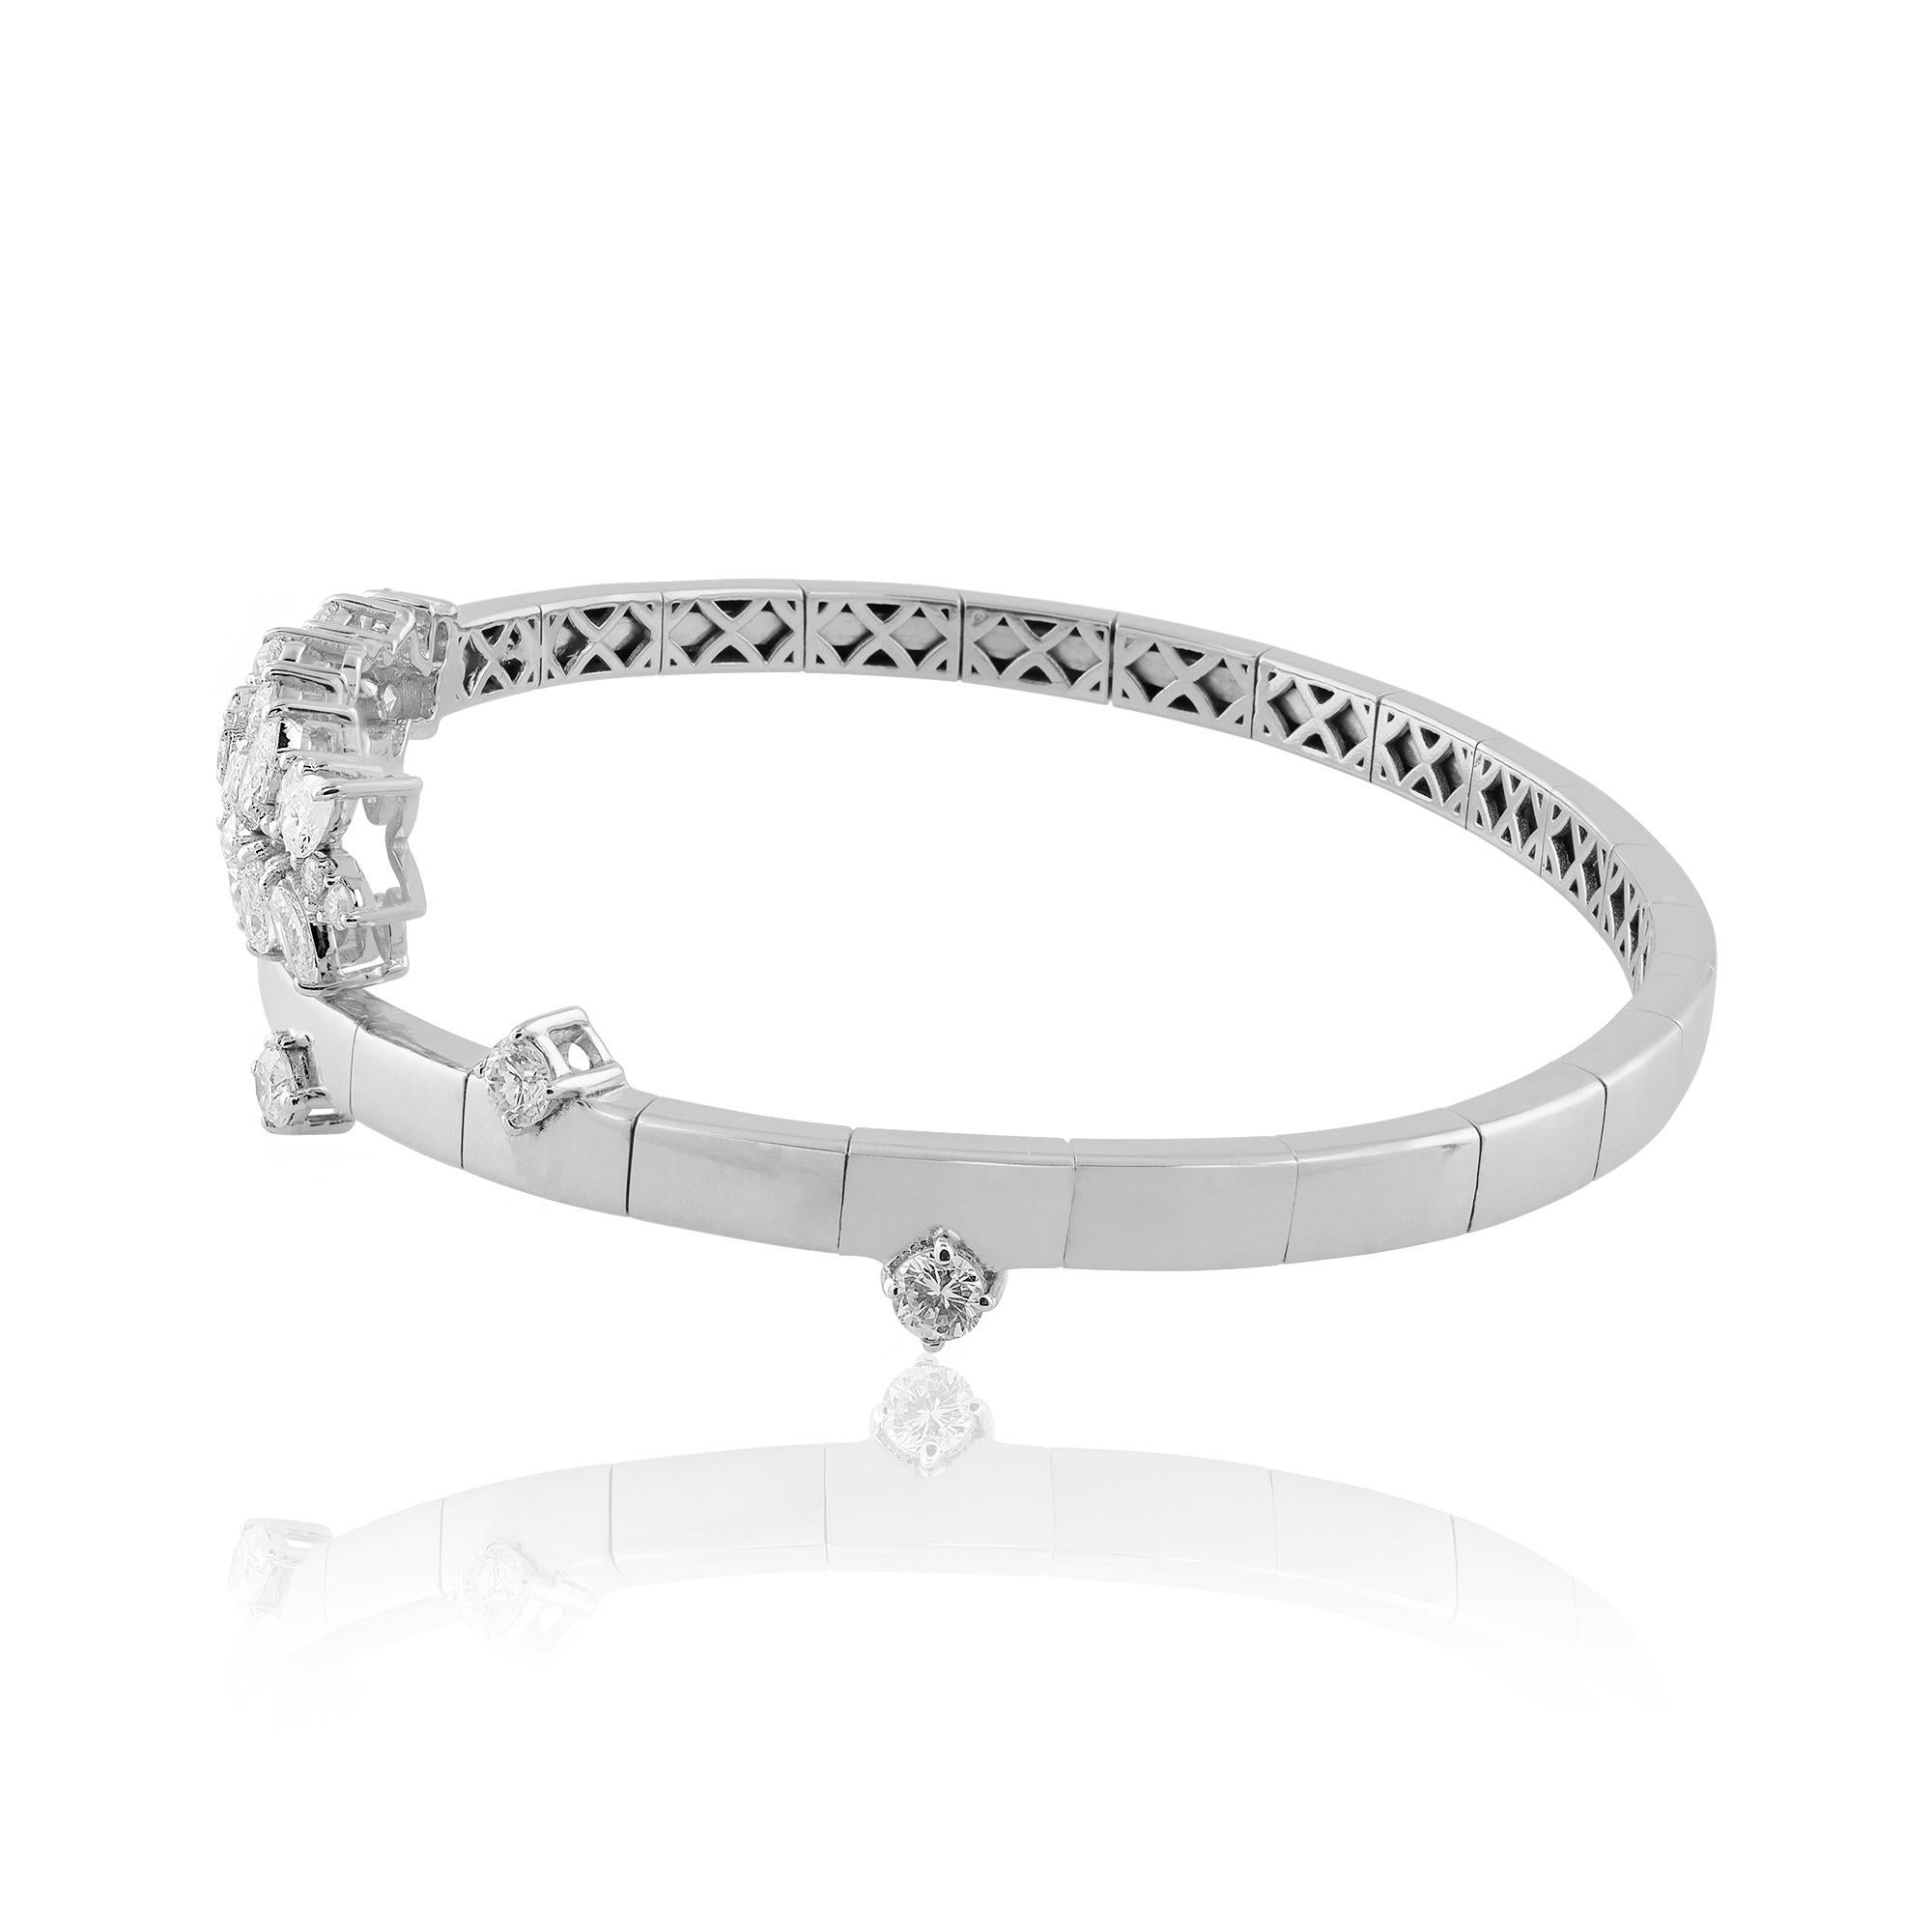 Code de l'article :- SEB-6059B
Poids brut :- 16.57 gm
Or blanc massif 18k Poids :- 16.19 gm
Poids du diamant Nature :- 1.91 Carat ( DIAMANT DE CLARTÉ MOYENNE SI1-SI2 & COULEUR H-I )
Taille du bracelet :- 56 mm environ

✦